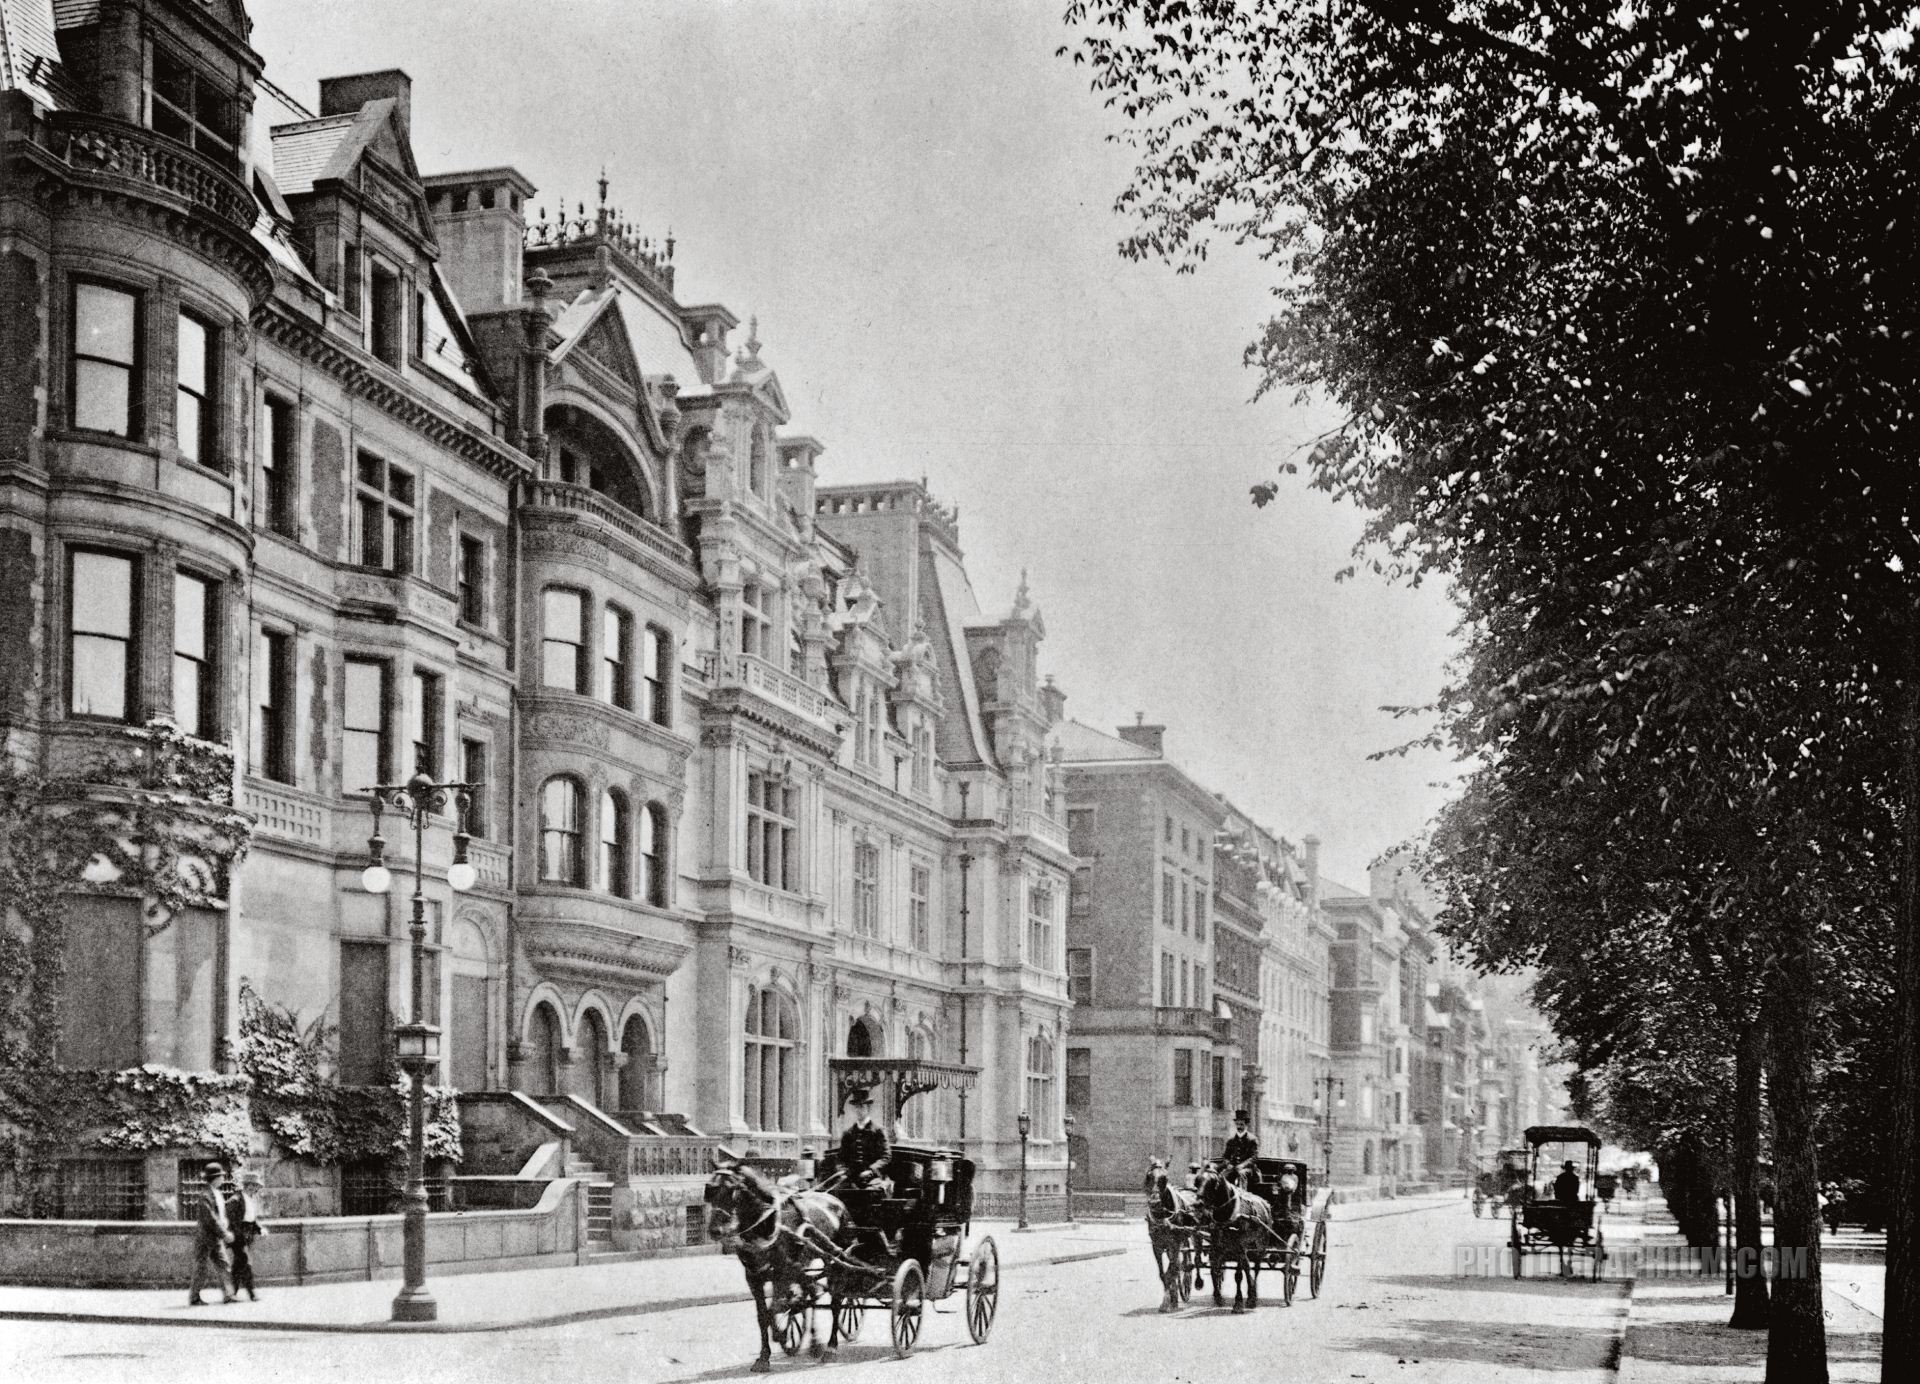 Взгляд в будущее. Вид на 5-ю Авеню на север от 66-й улицы, 1900 год.